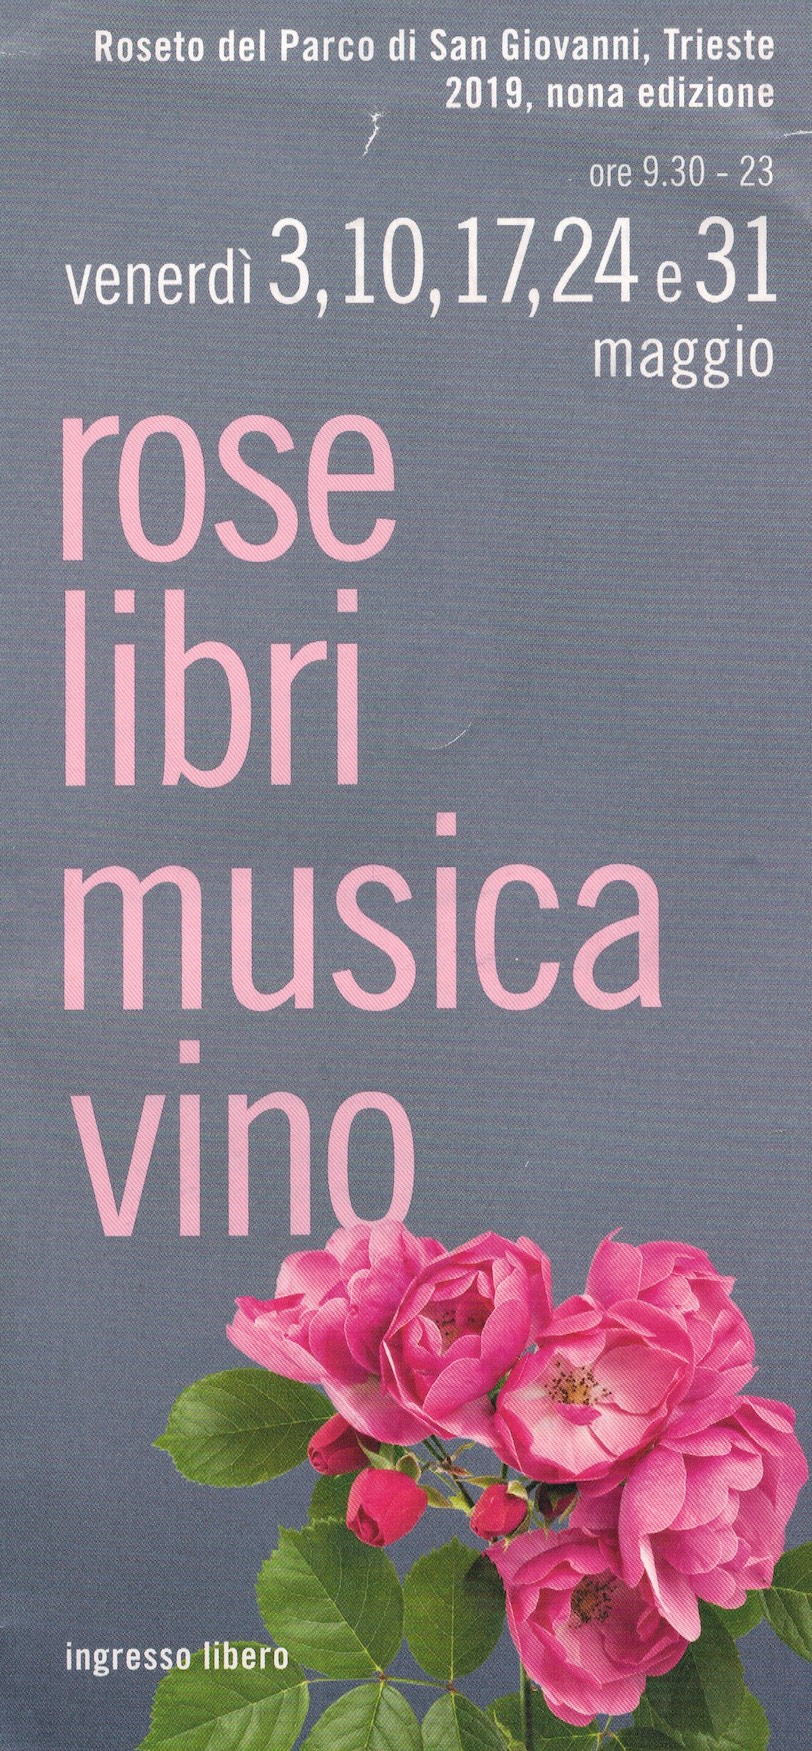 Quartetto Porteño Live @ Rose Libri Musica Vino Roseto del Parco San Giovanni Trieste